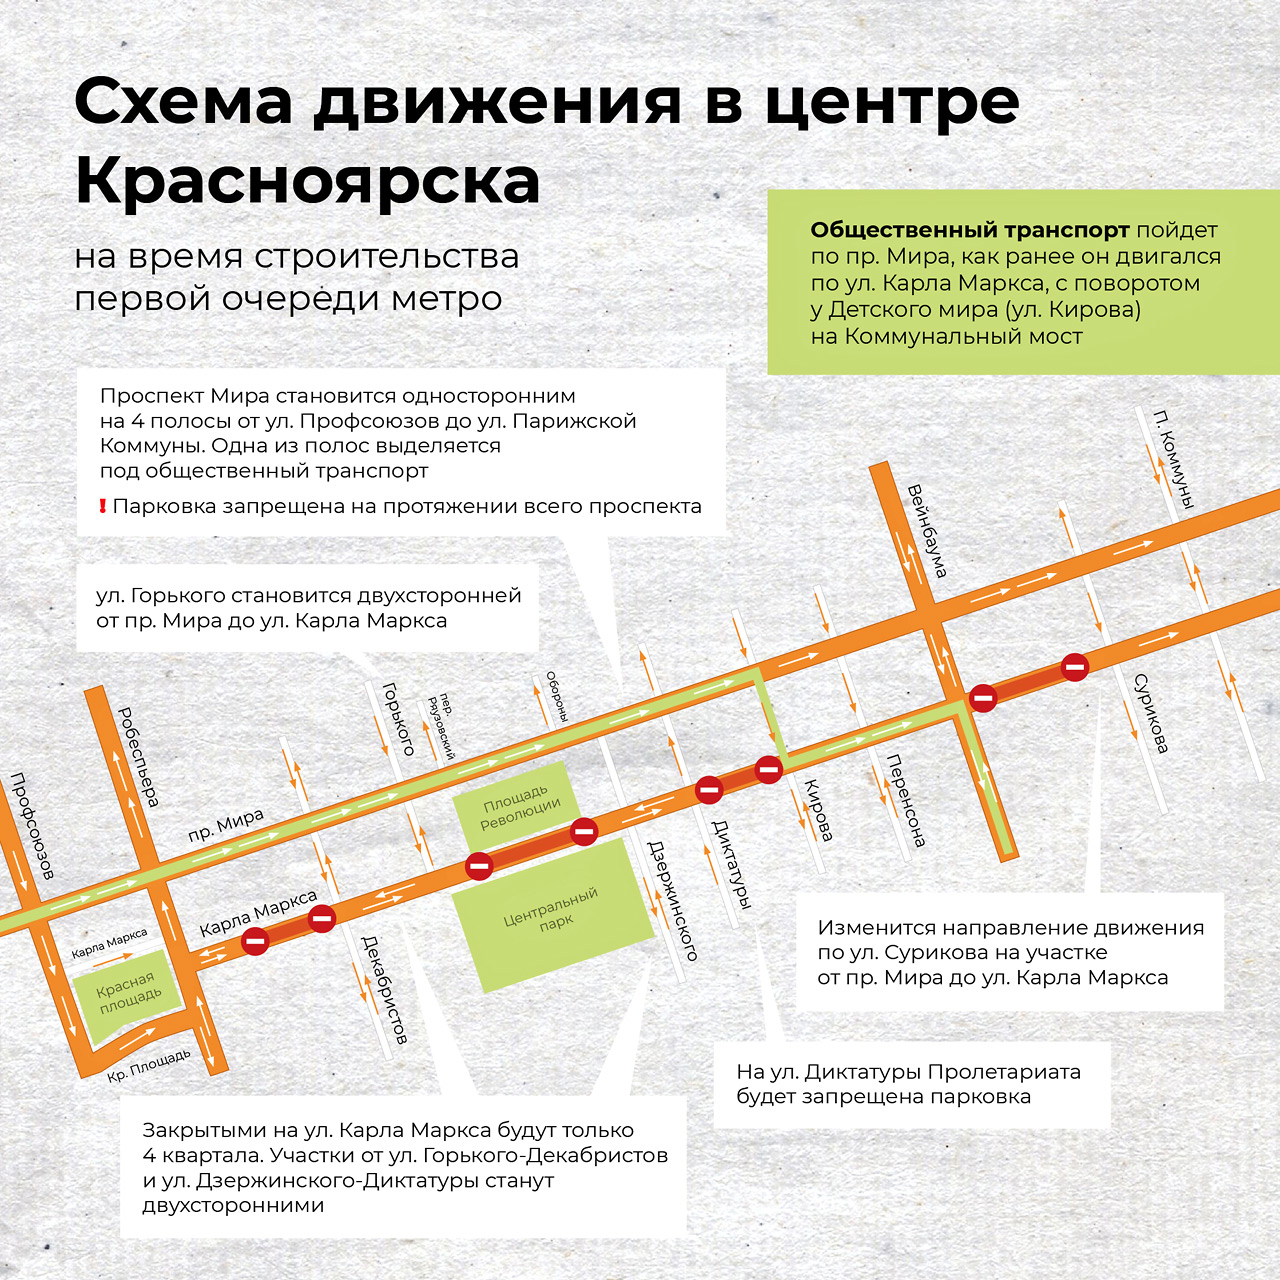 Схема перекрытий и организации движения в центре Красноярска на время строительства метро